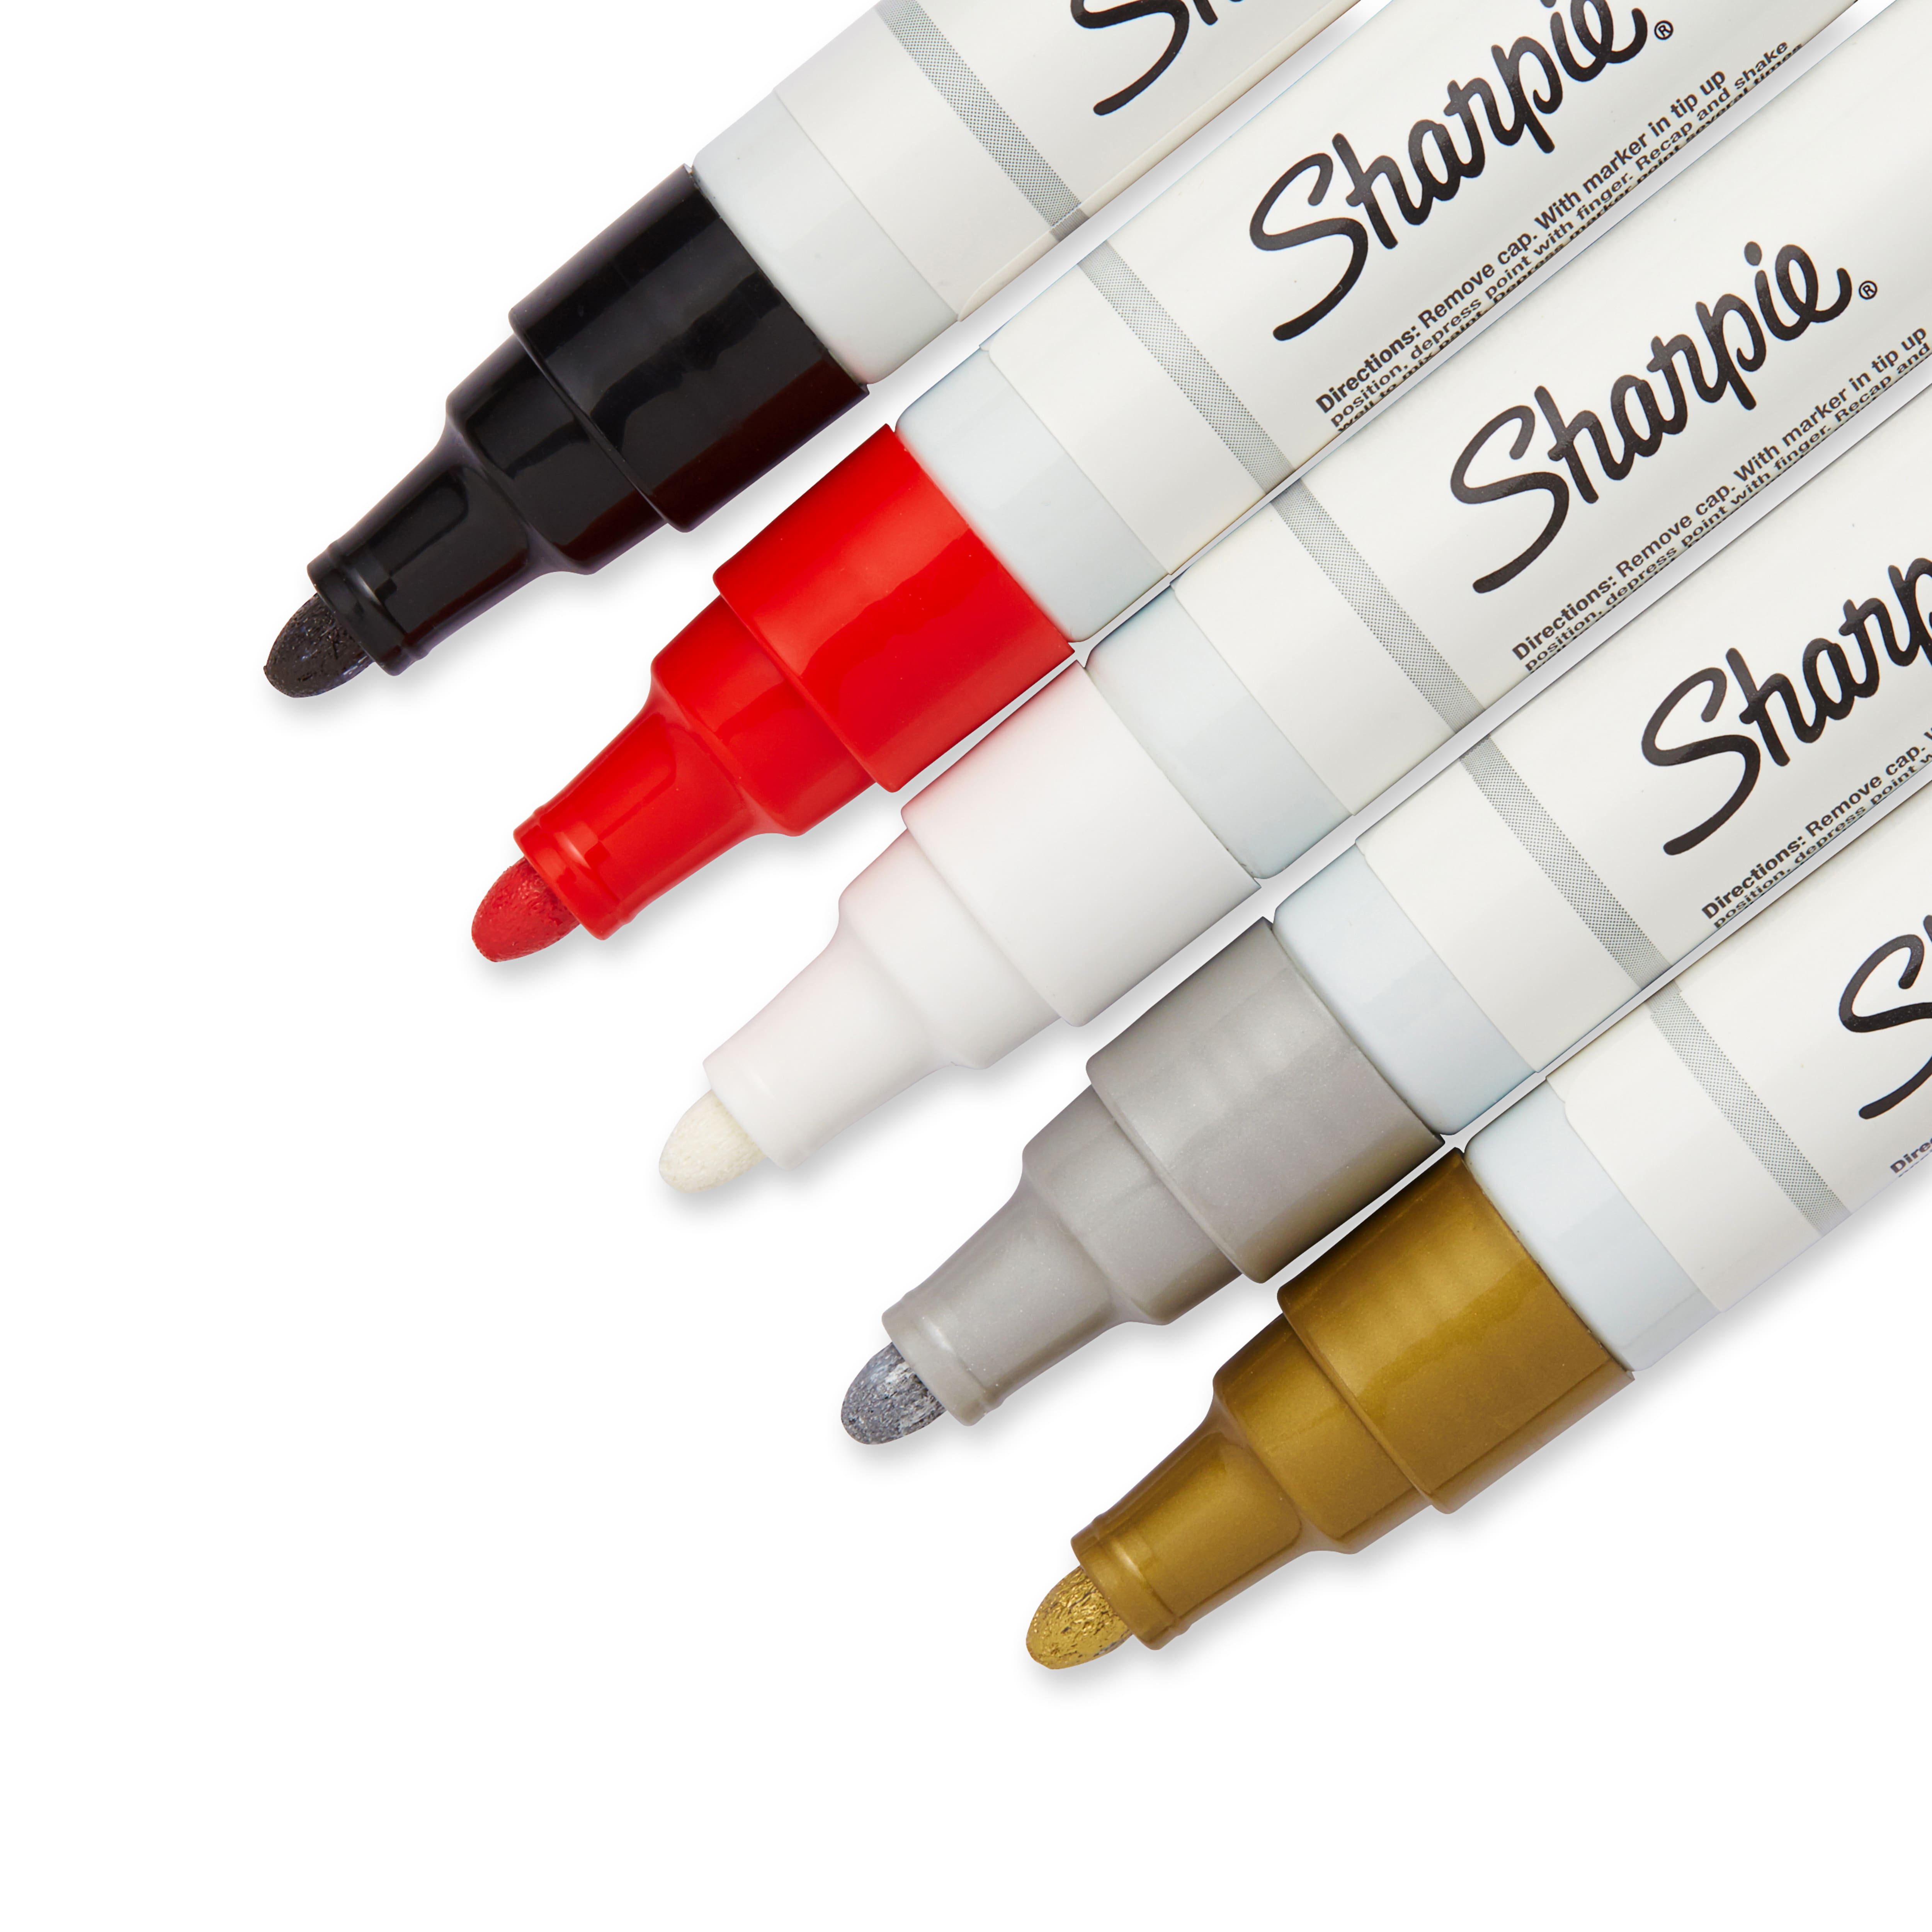 Sharpie White Permanent Paint Marker - Medium Point - SupplyDen